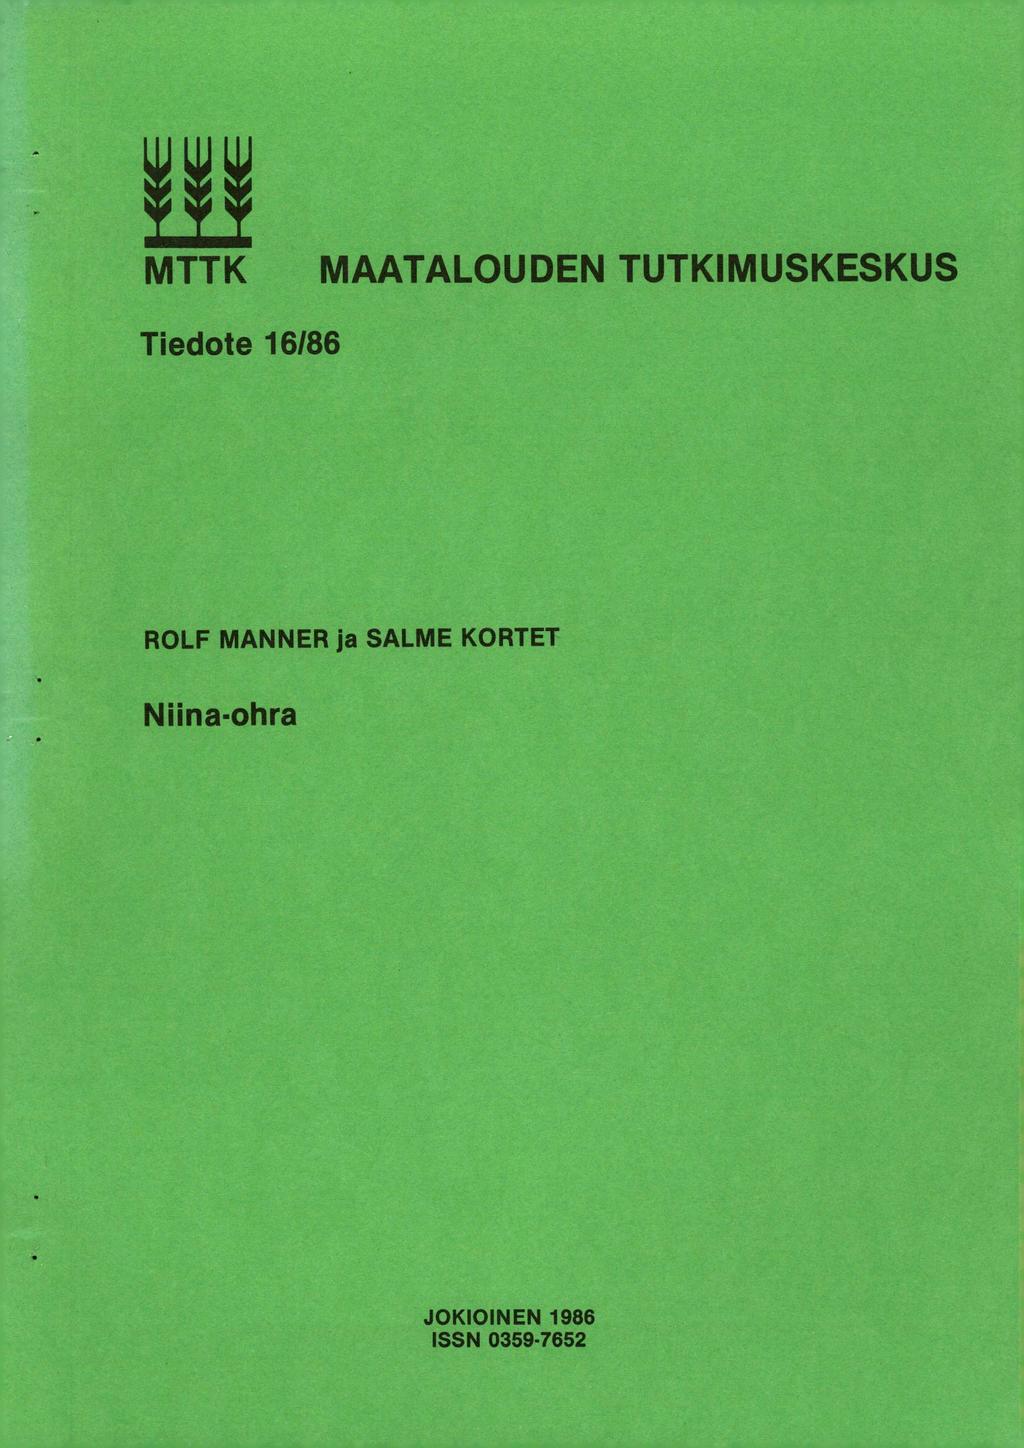 MTTK MAATALOUDEN TUTKIMUSKESKUS Tiedote 16/86 ROLF